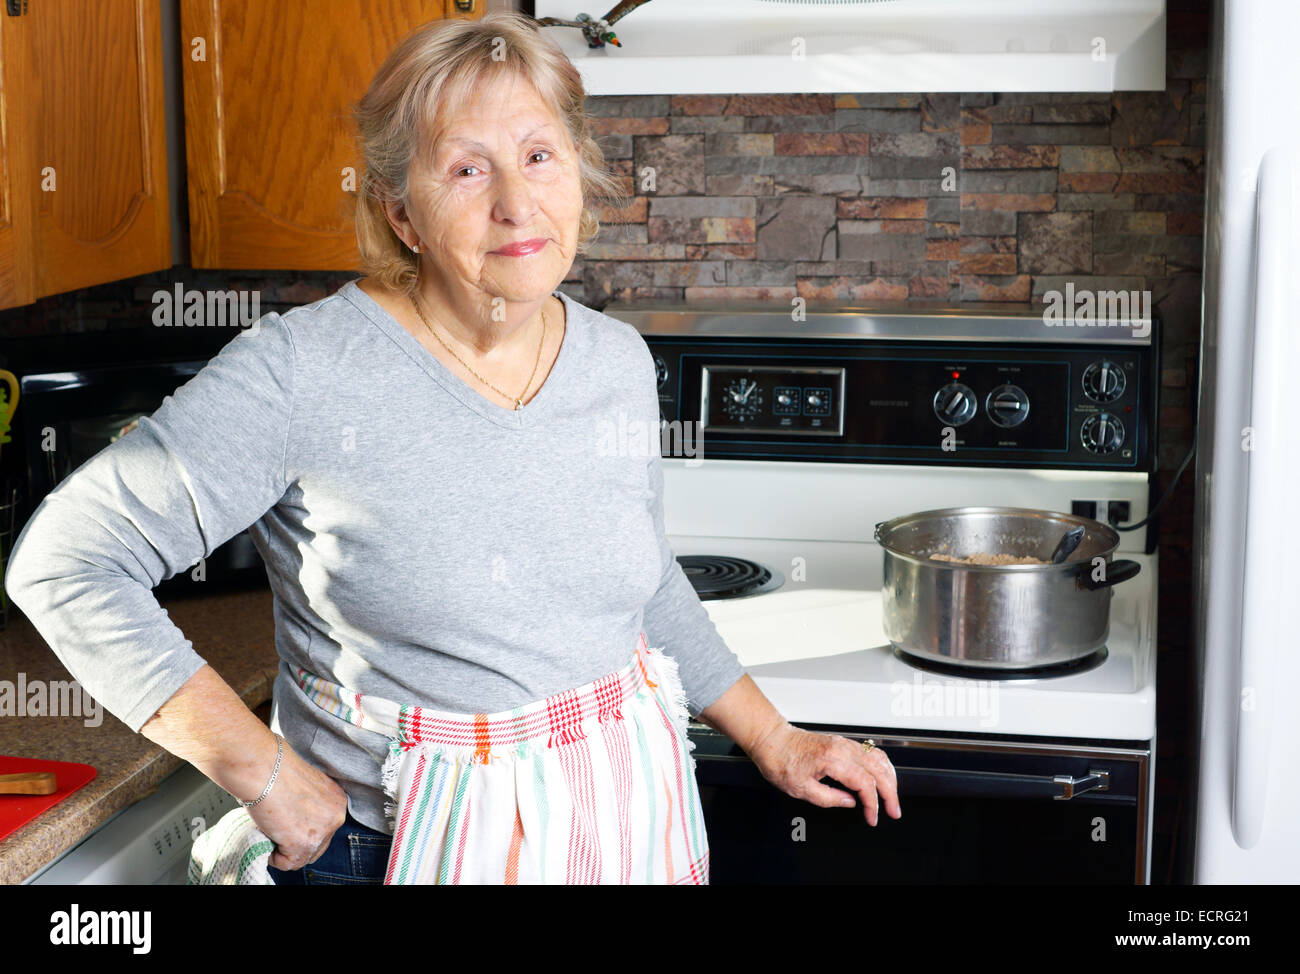 Grand-mère souriant ou senior woman cooking dans sa cuisine Banque D'Images